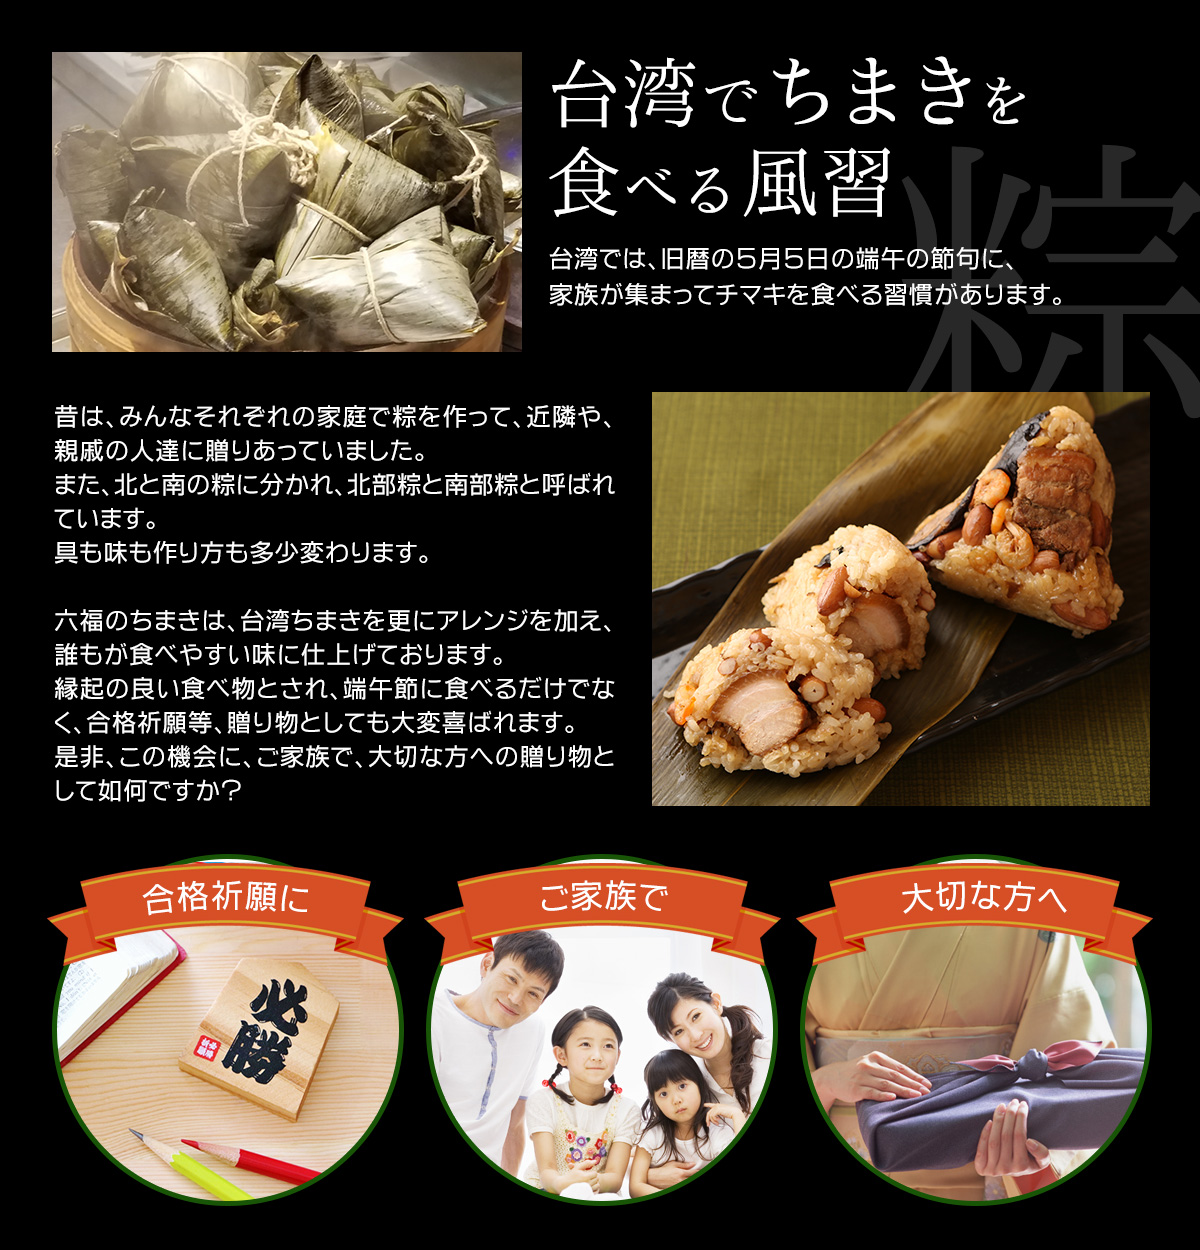 台湾でちまきを食べる風習